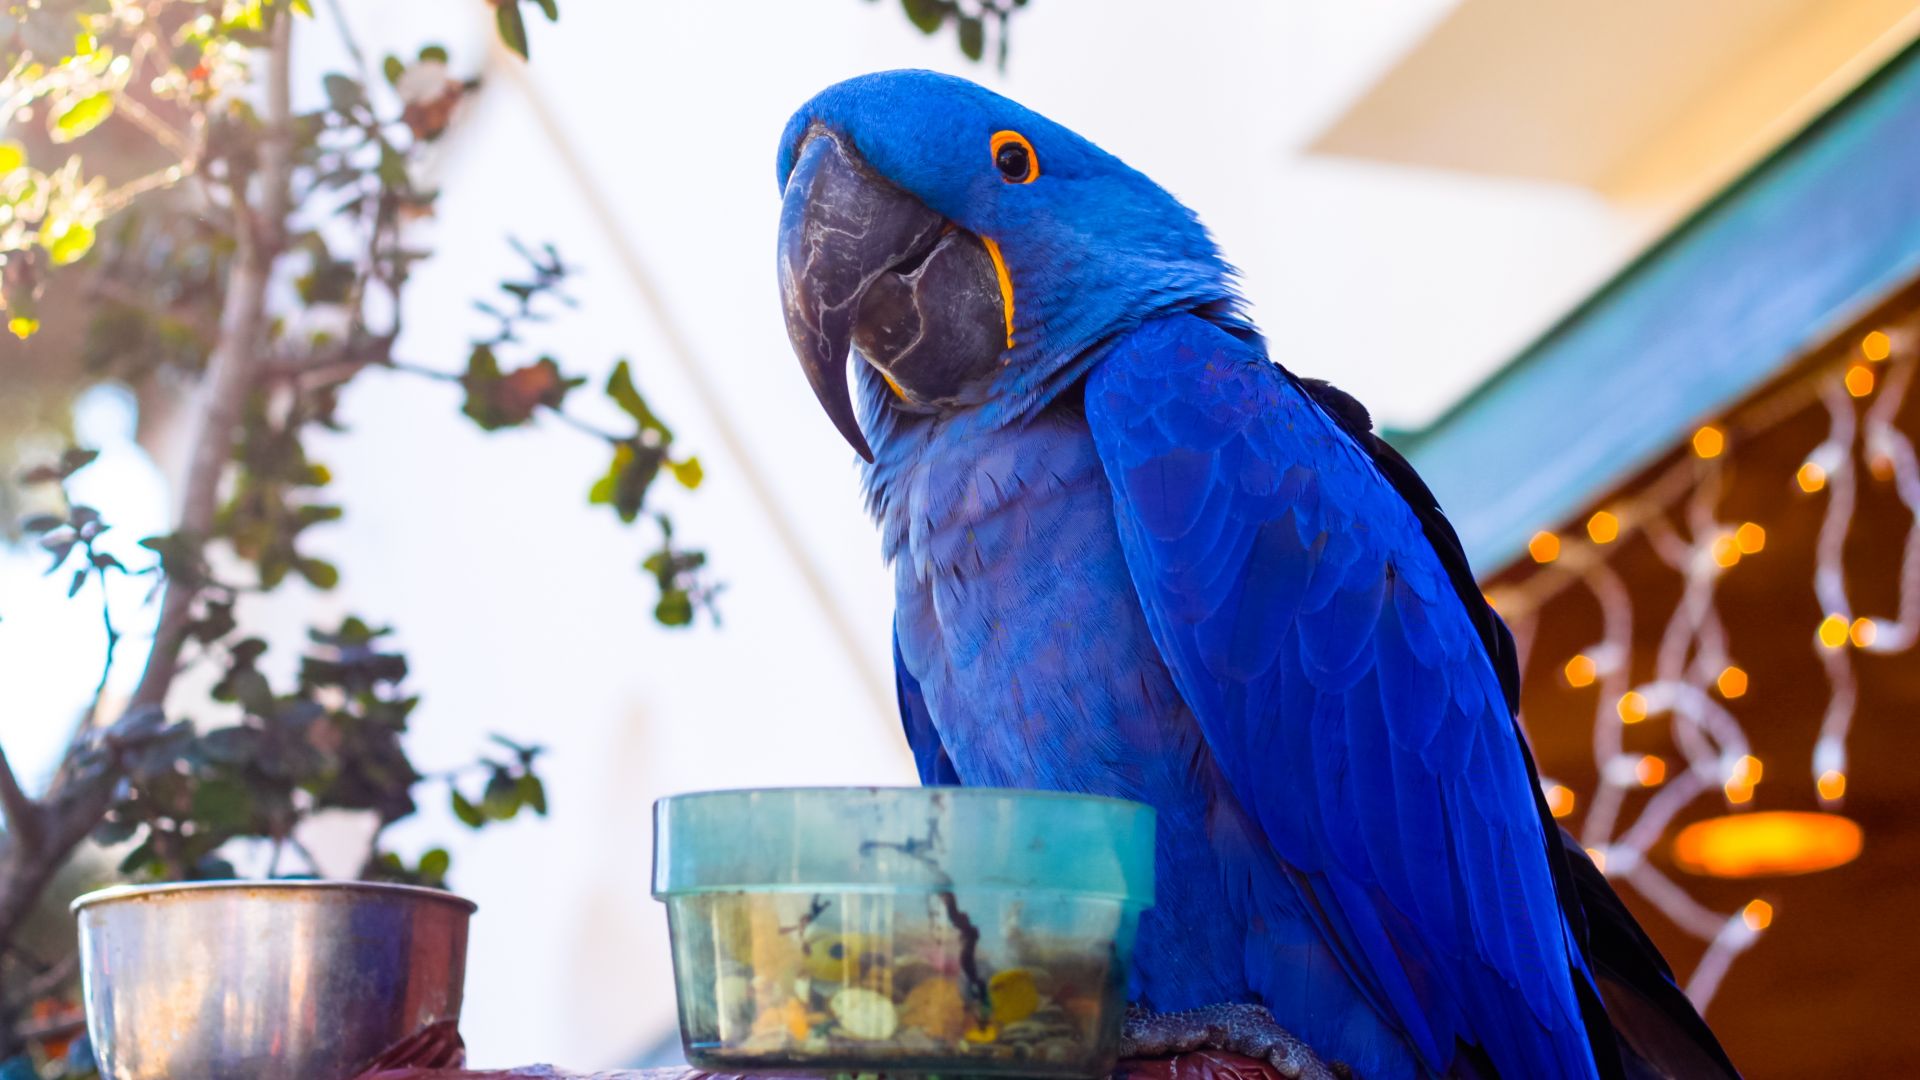 Wallpaper Blue macaw parrot bird